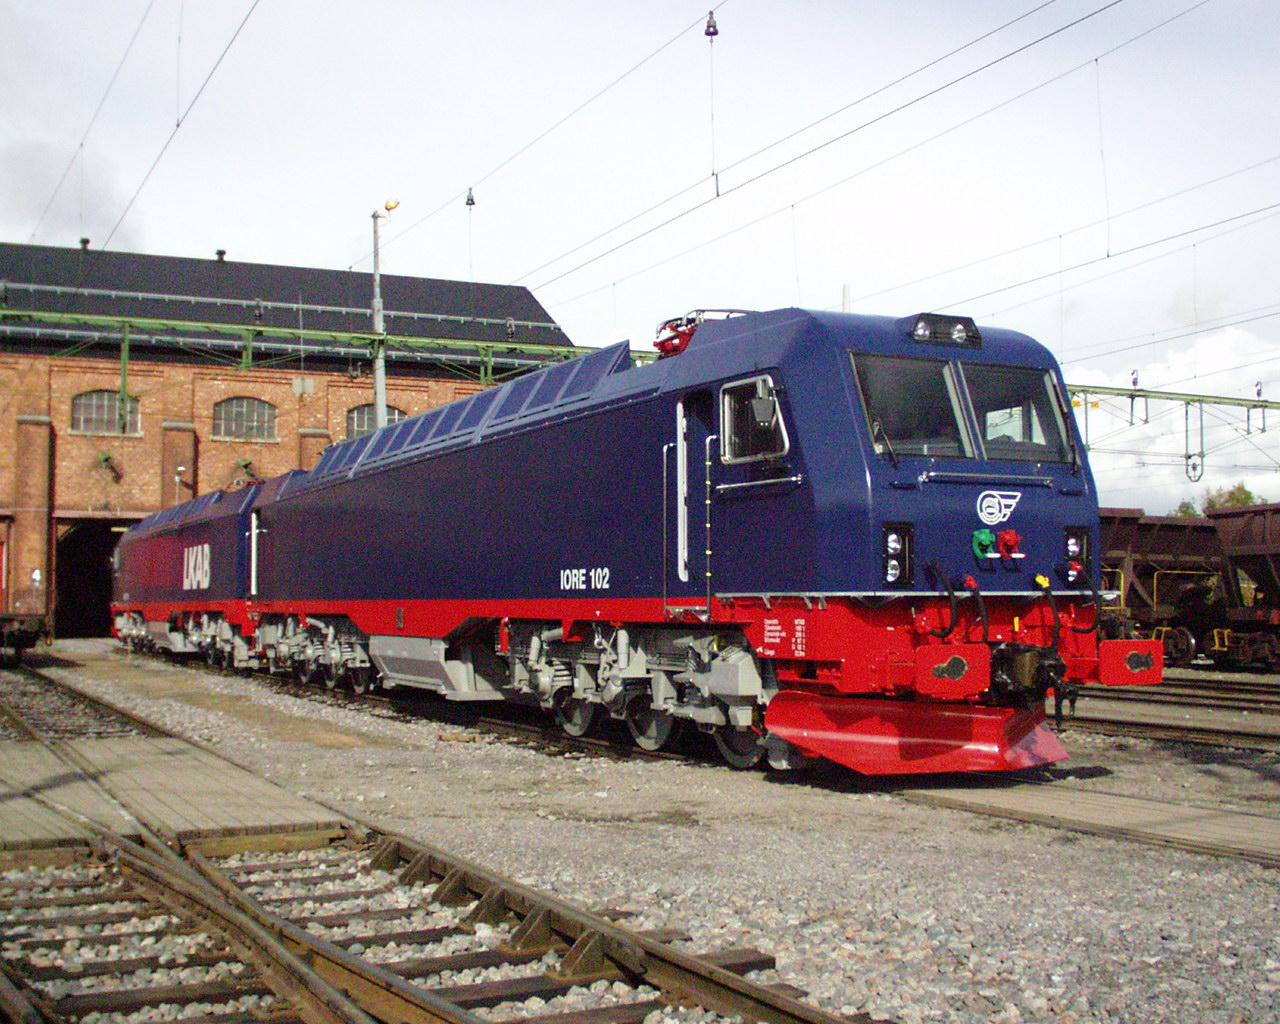 电力机车科普iore型电力机车的先辈瑞典国家铁路dm型和dm3型电力机车